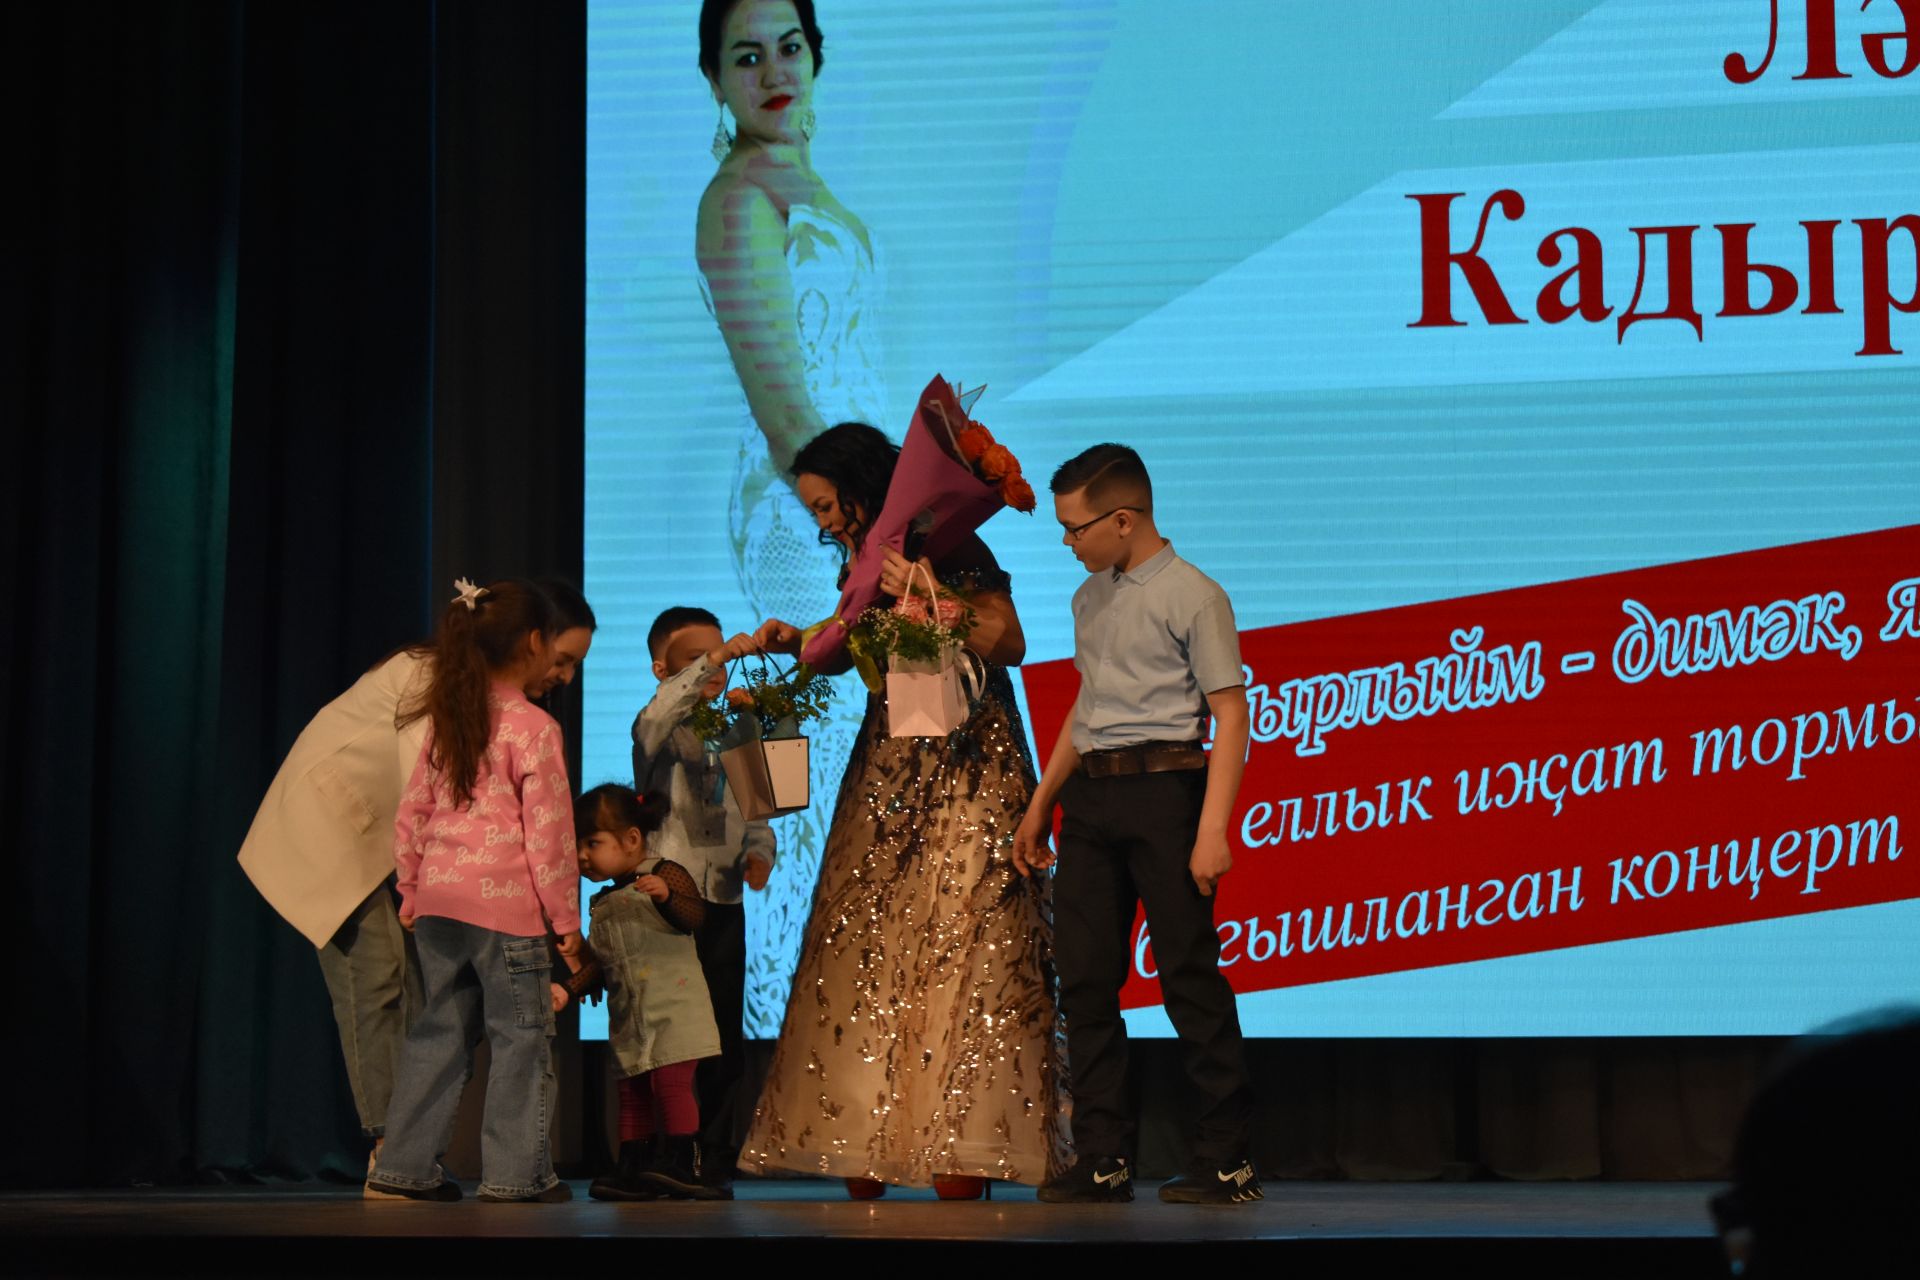 Большим концертом отметила юбилей своей творческой деятельности Лейла Кадырова